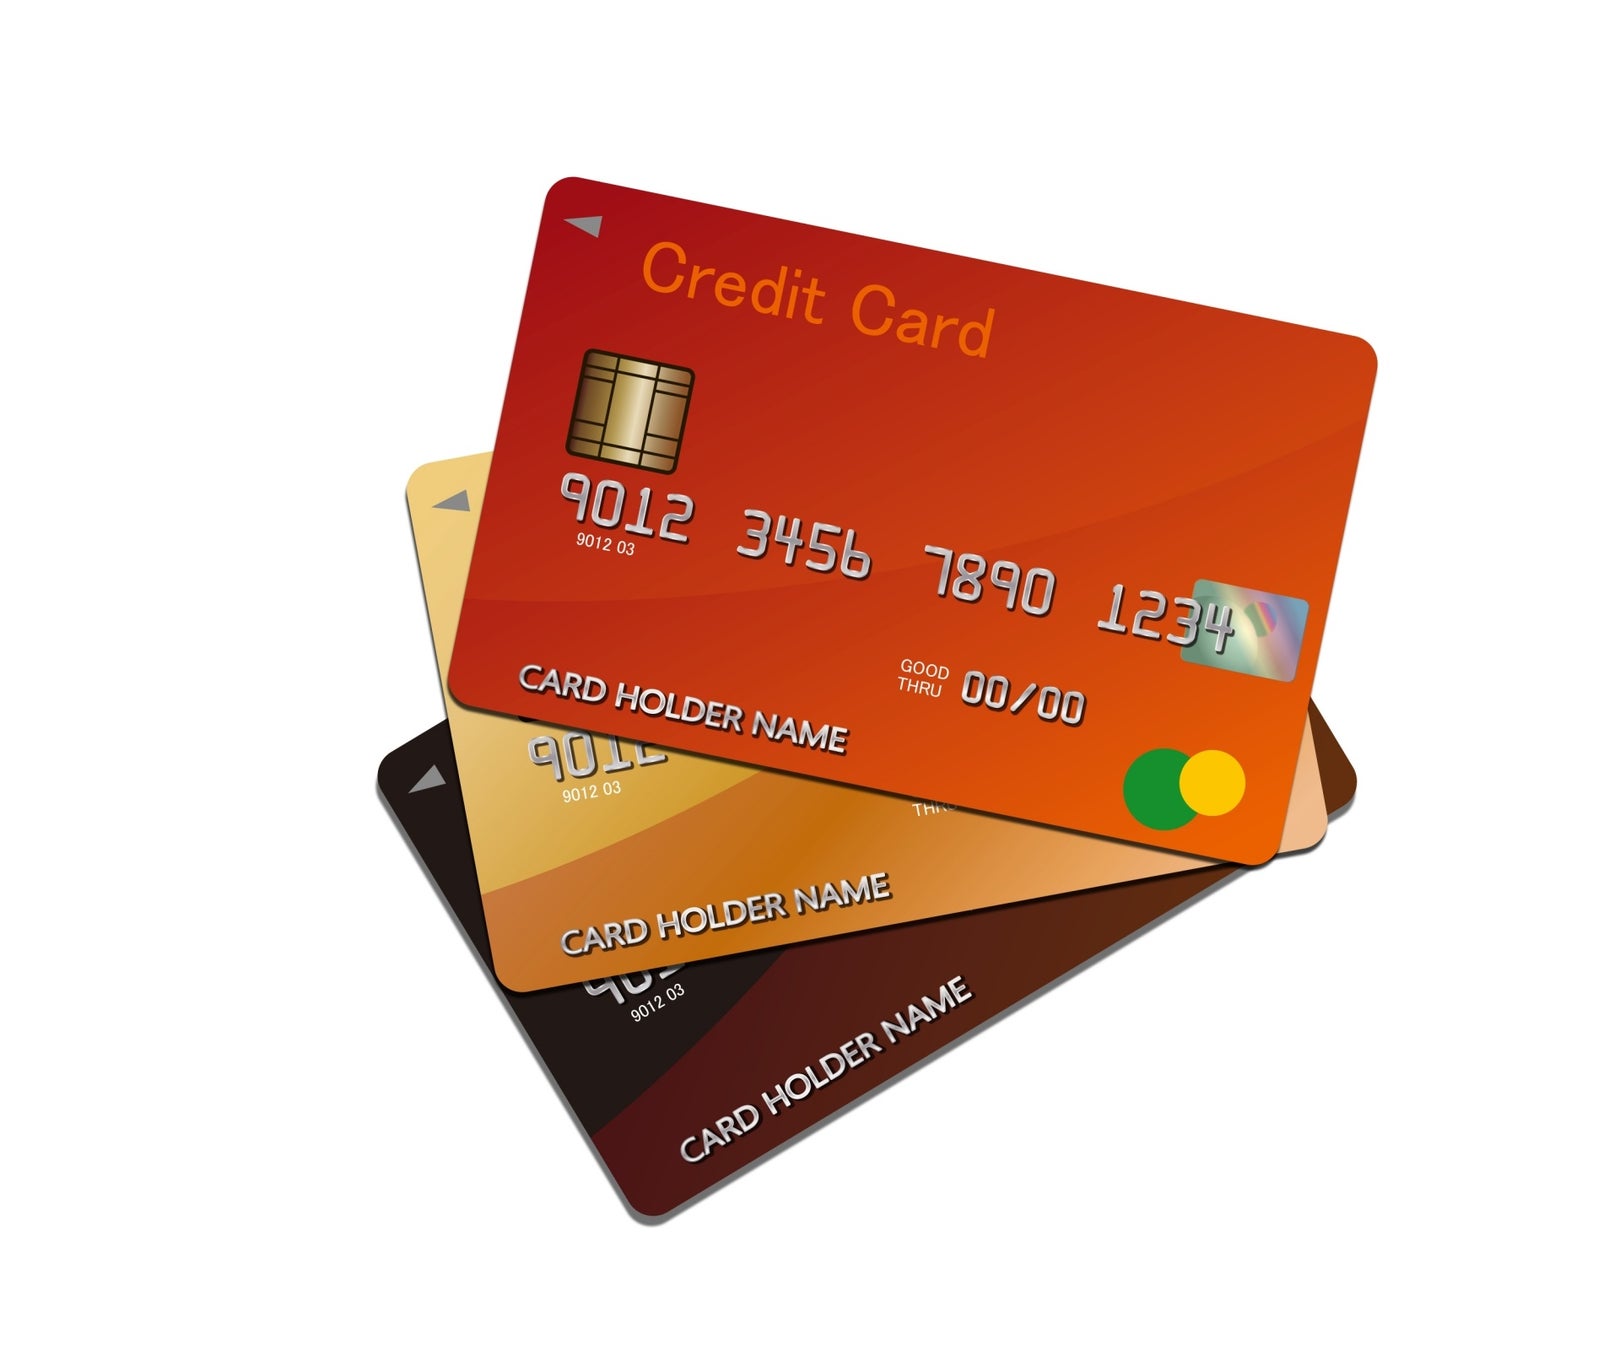 【308人調査】クレジットカードに関するアンケート調査